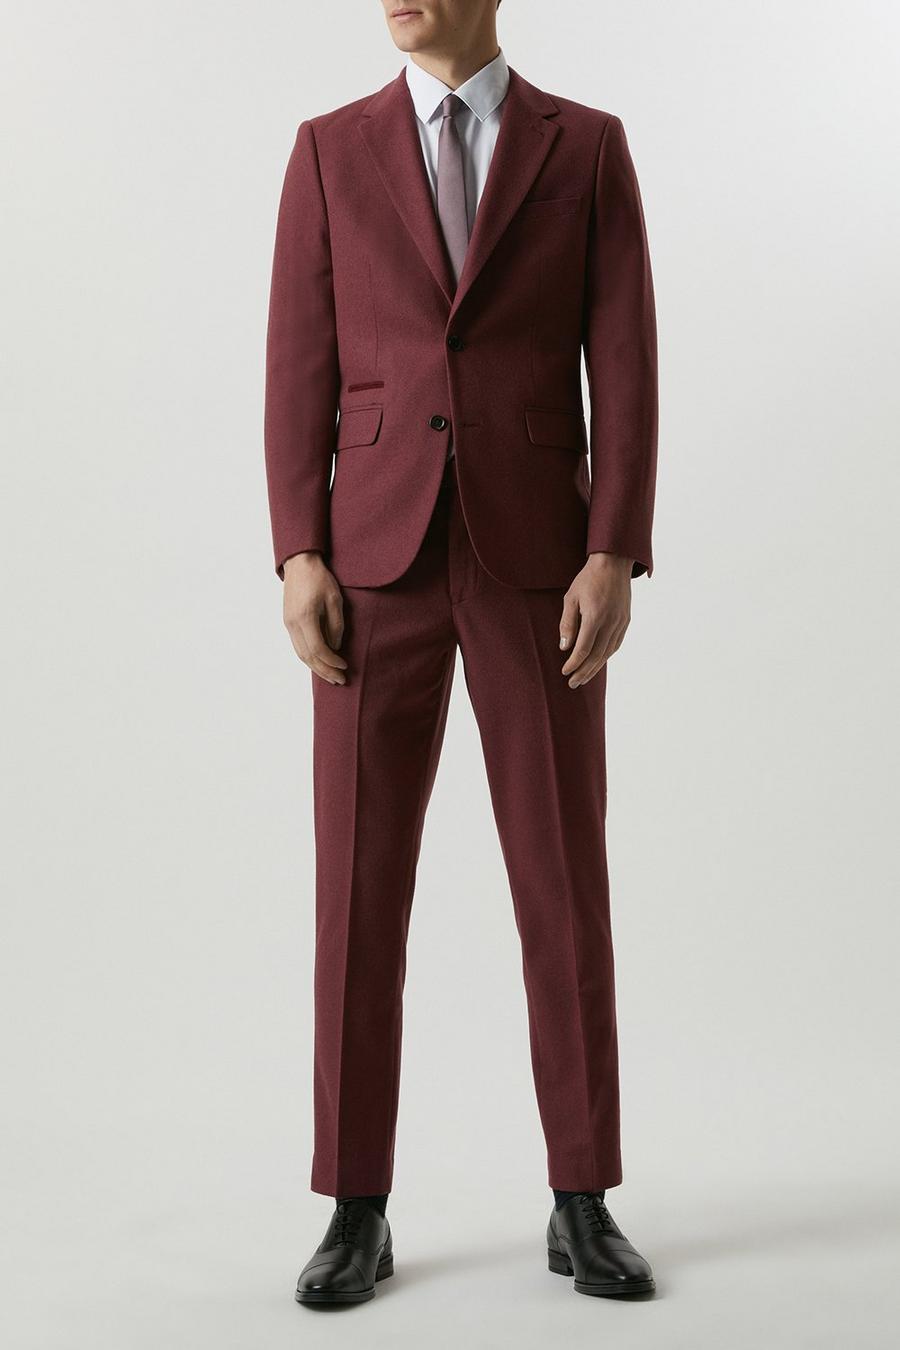 Slim Fit Burgundy Tweed Three - Piece Suit